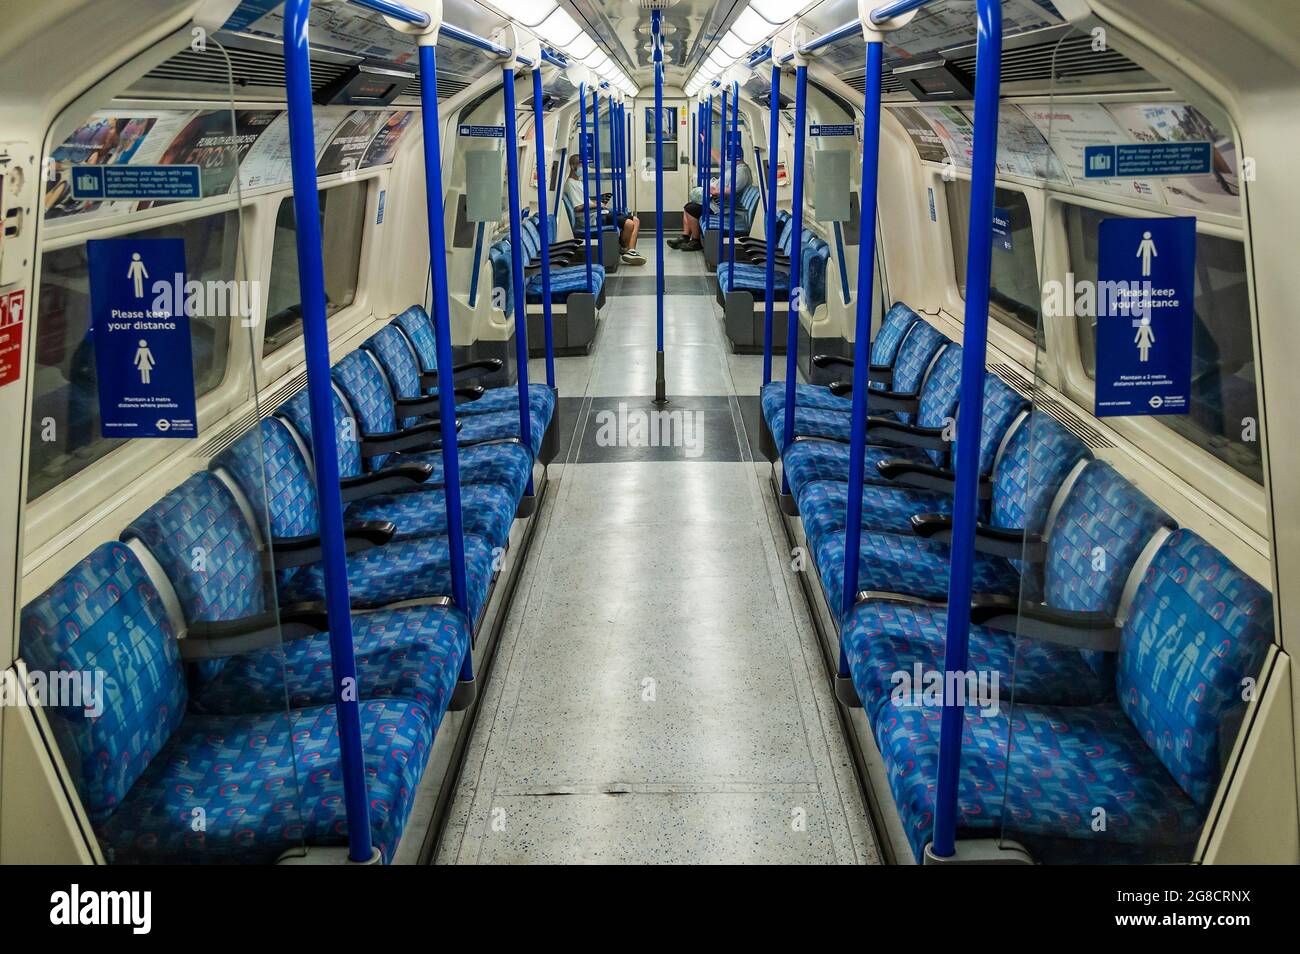 Londra, Regno Unito. 19 luglio 2021. La metropolitana non è molto più trafficato, come il cosiddetto 'Freedom Day' arriva. Infatti molti treni sono abbastanza vuoti. Credit: Guy Bell/Alamy Live News Foto Stock